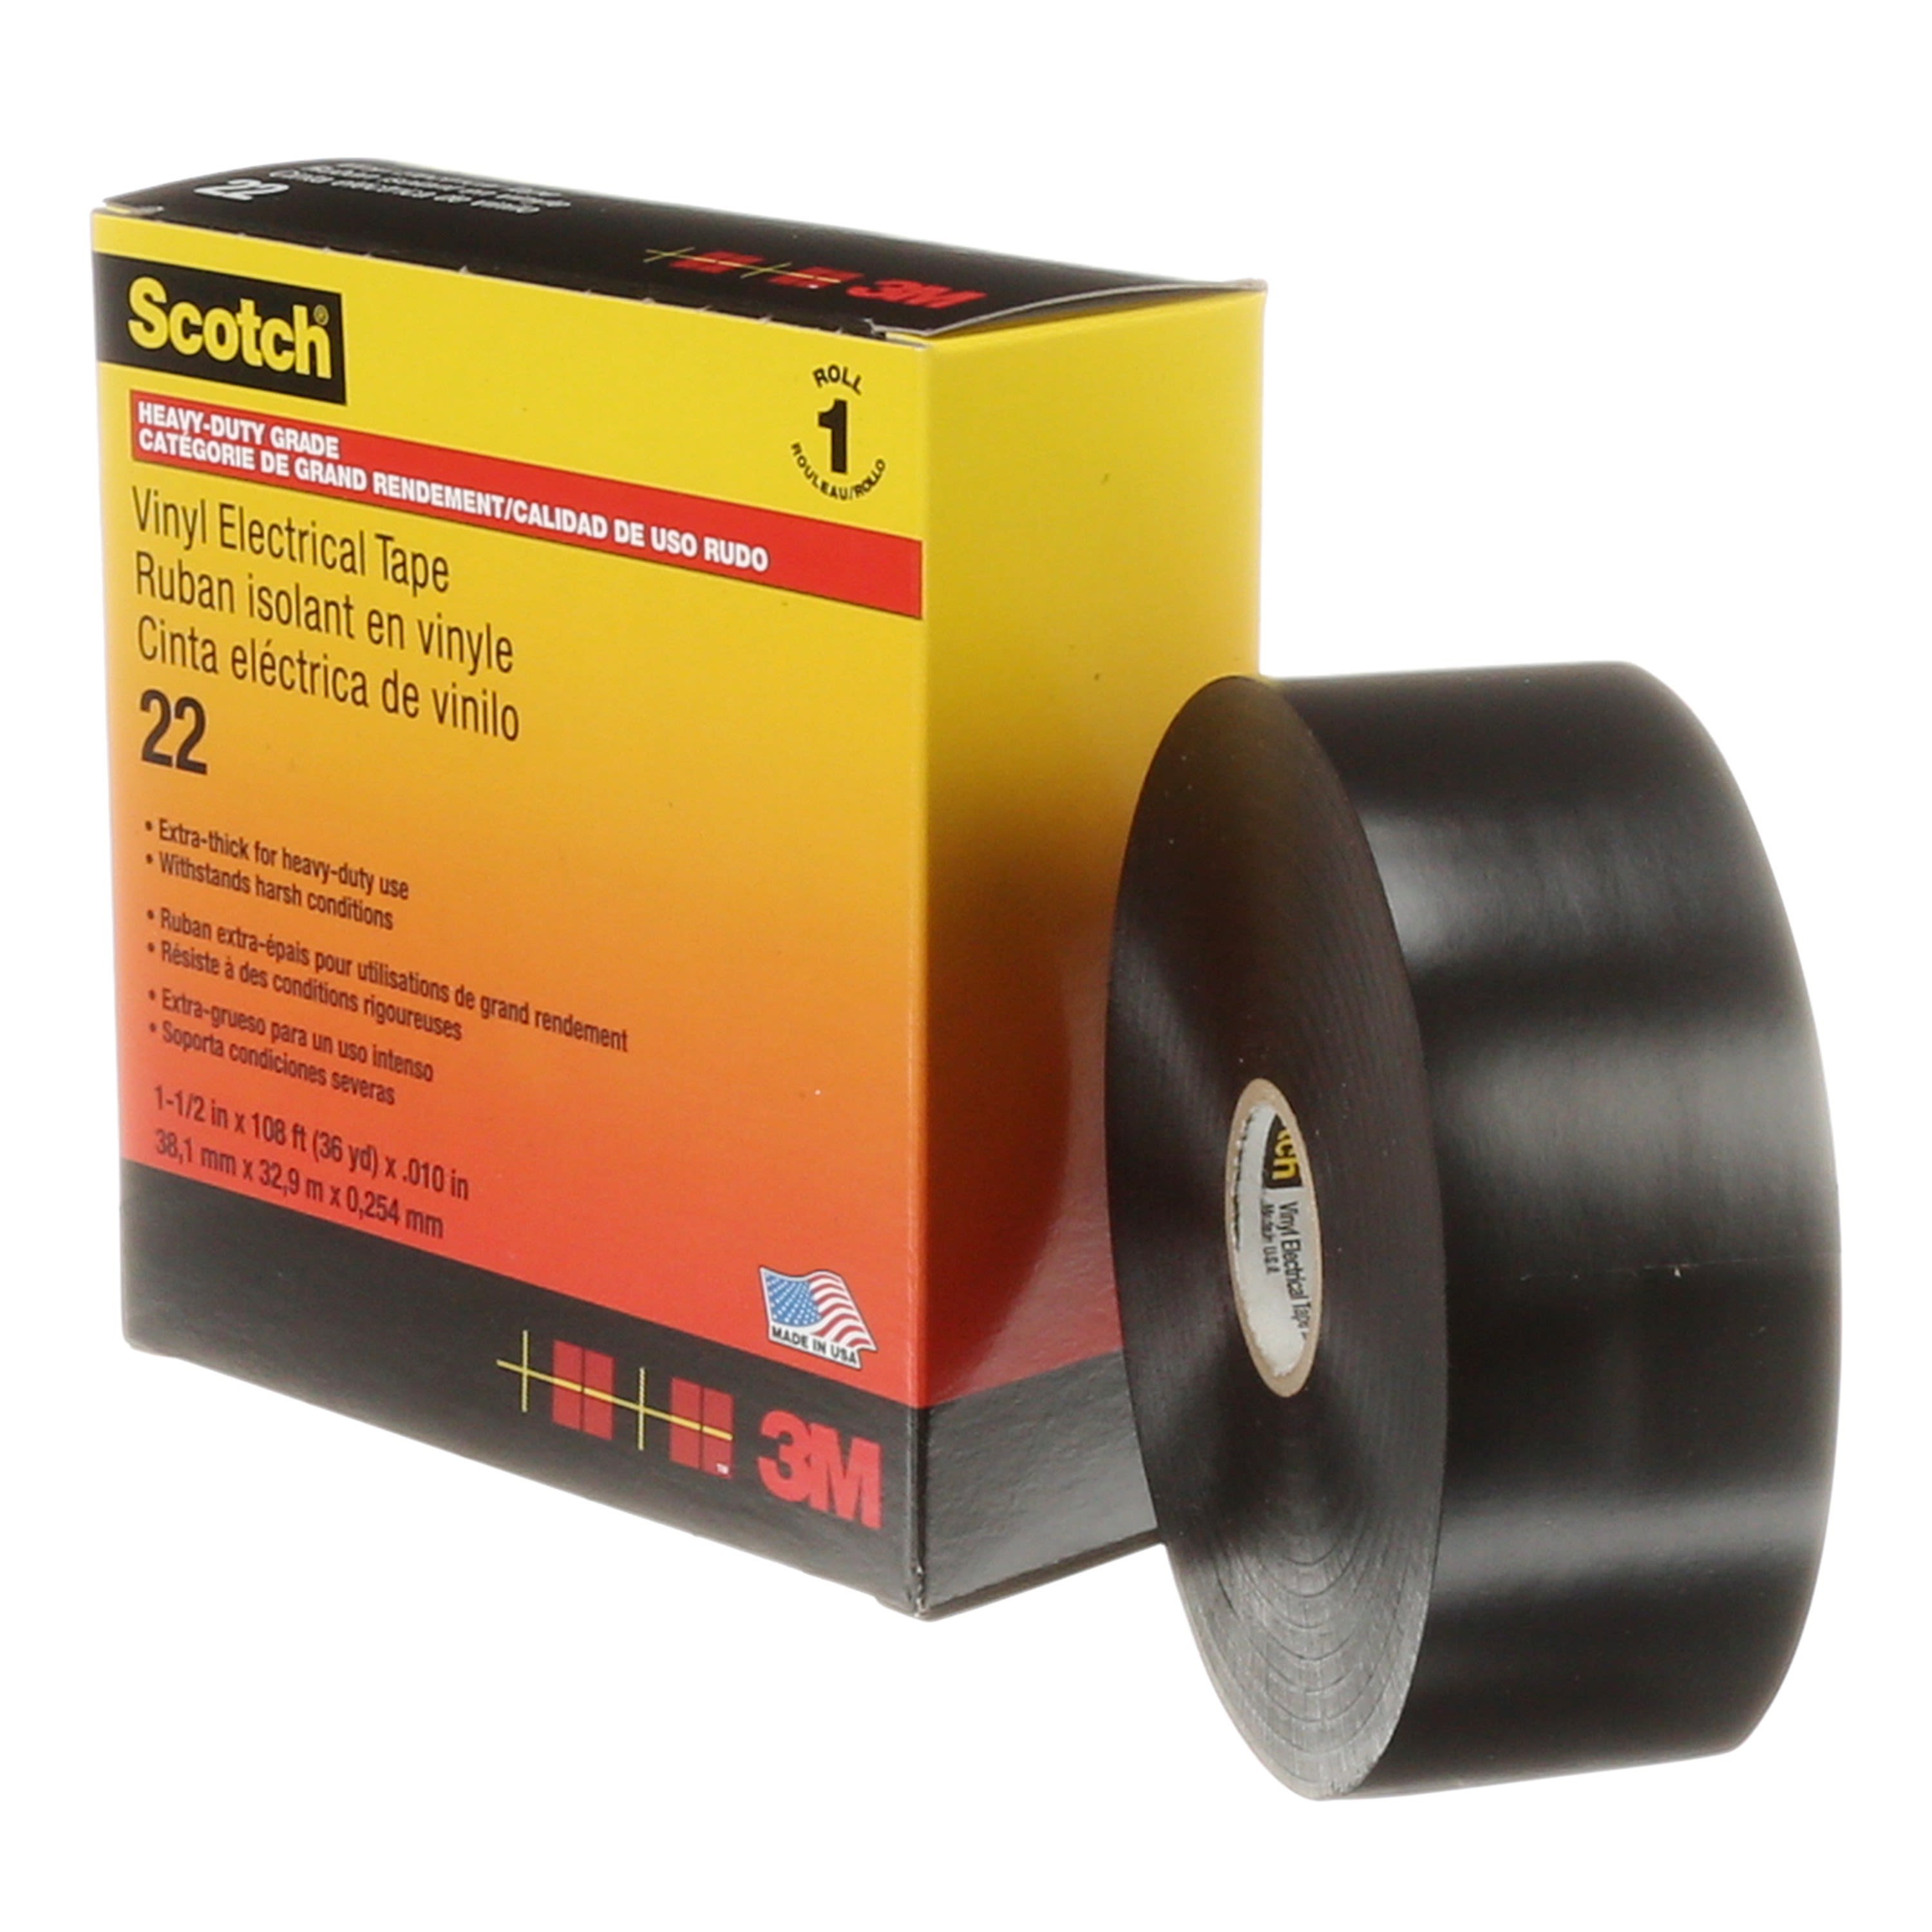 3M Scotch 22 Ruban vinyle isolant electrique noir 33m x 38mm ep. 0,25mm 3M  Electricite